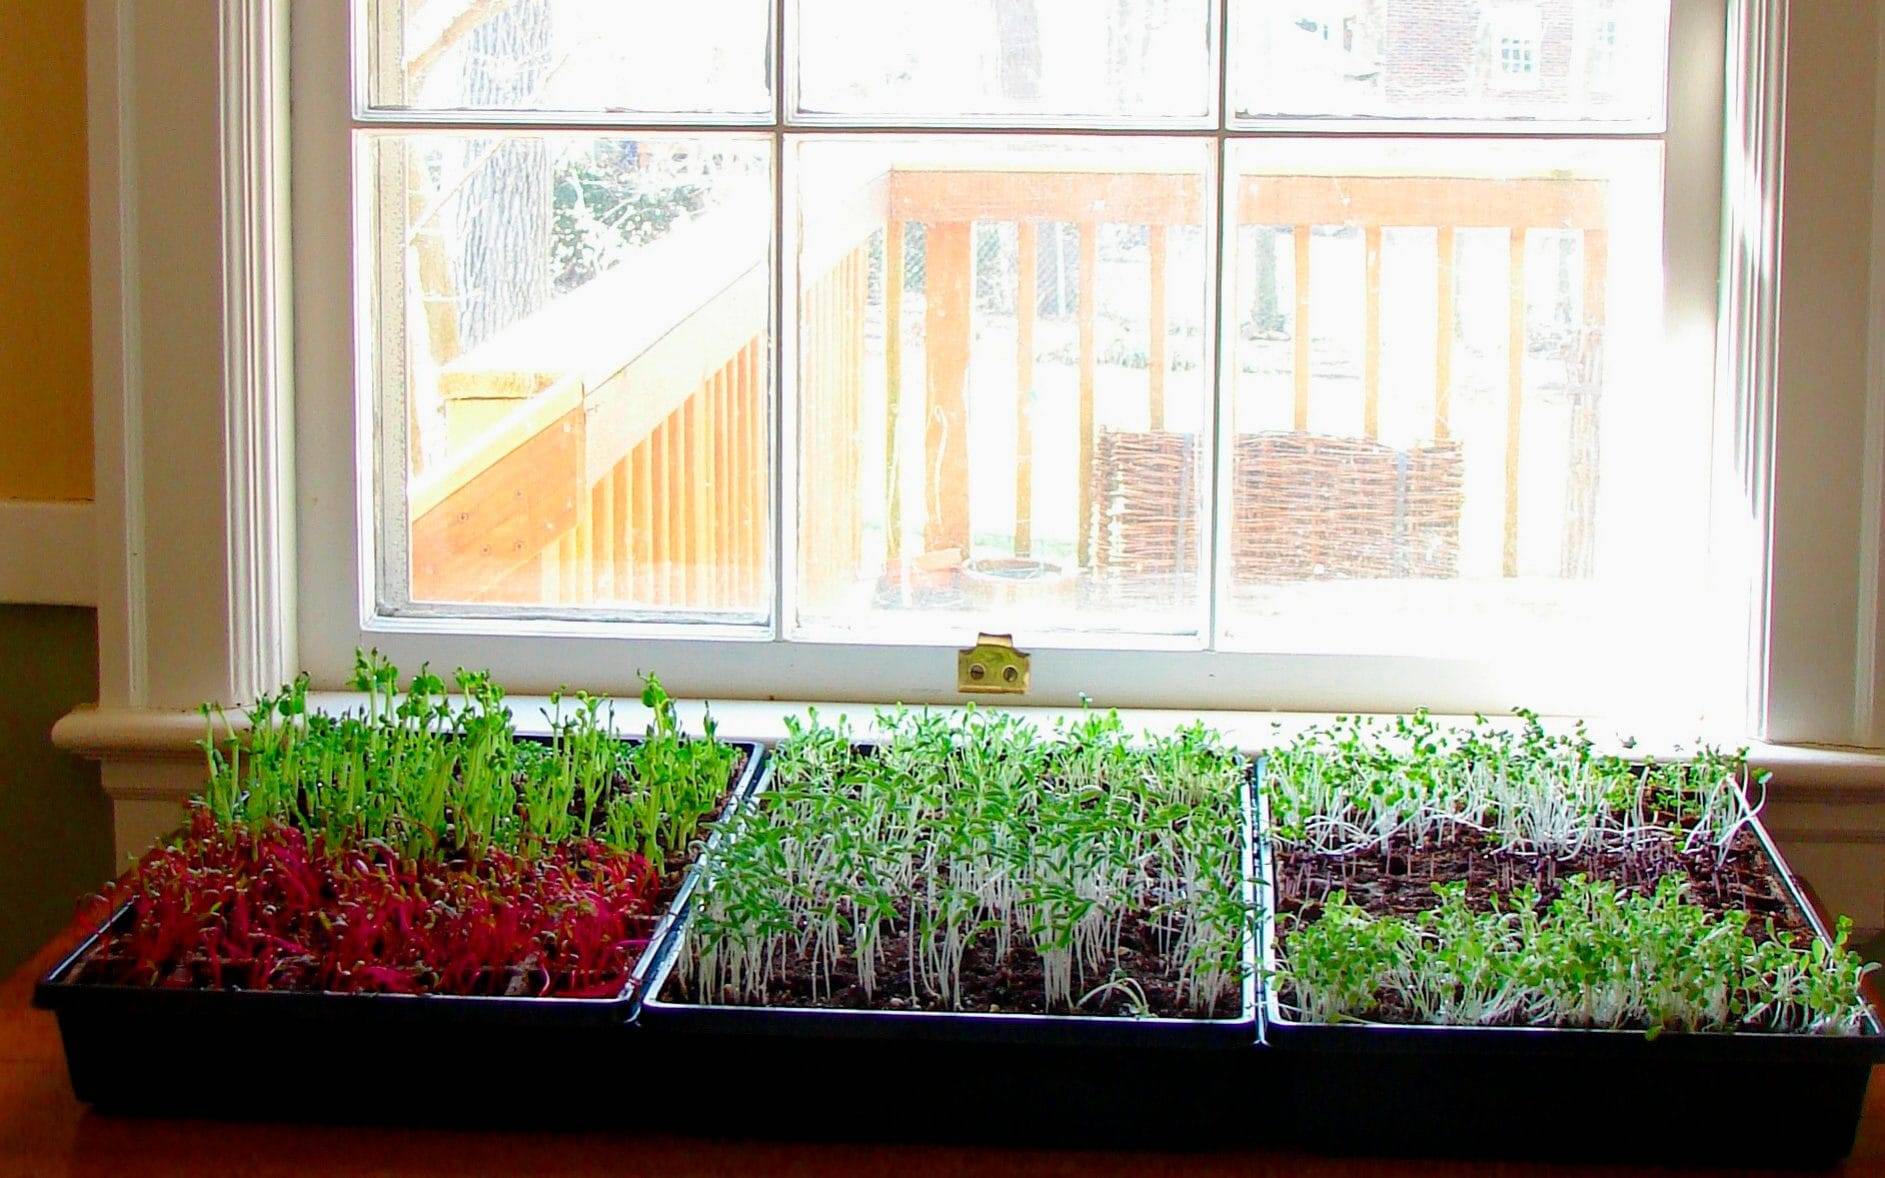 Огород на подоконнике — мифы и реальность. какие овощи и зелень можно выращивать дома и когда? фото — ботаничка